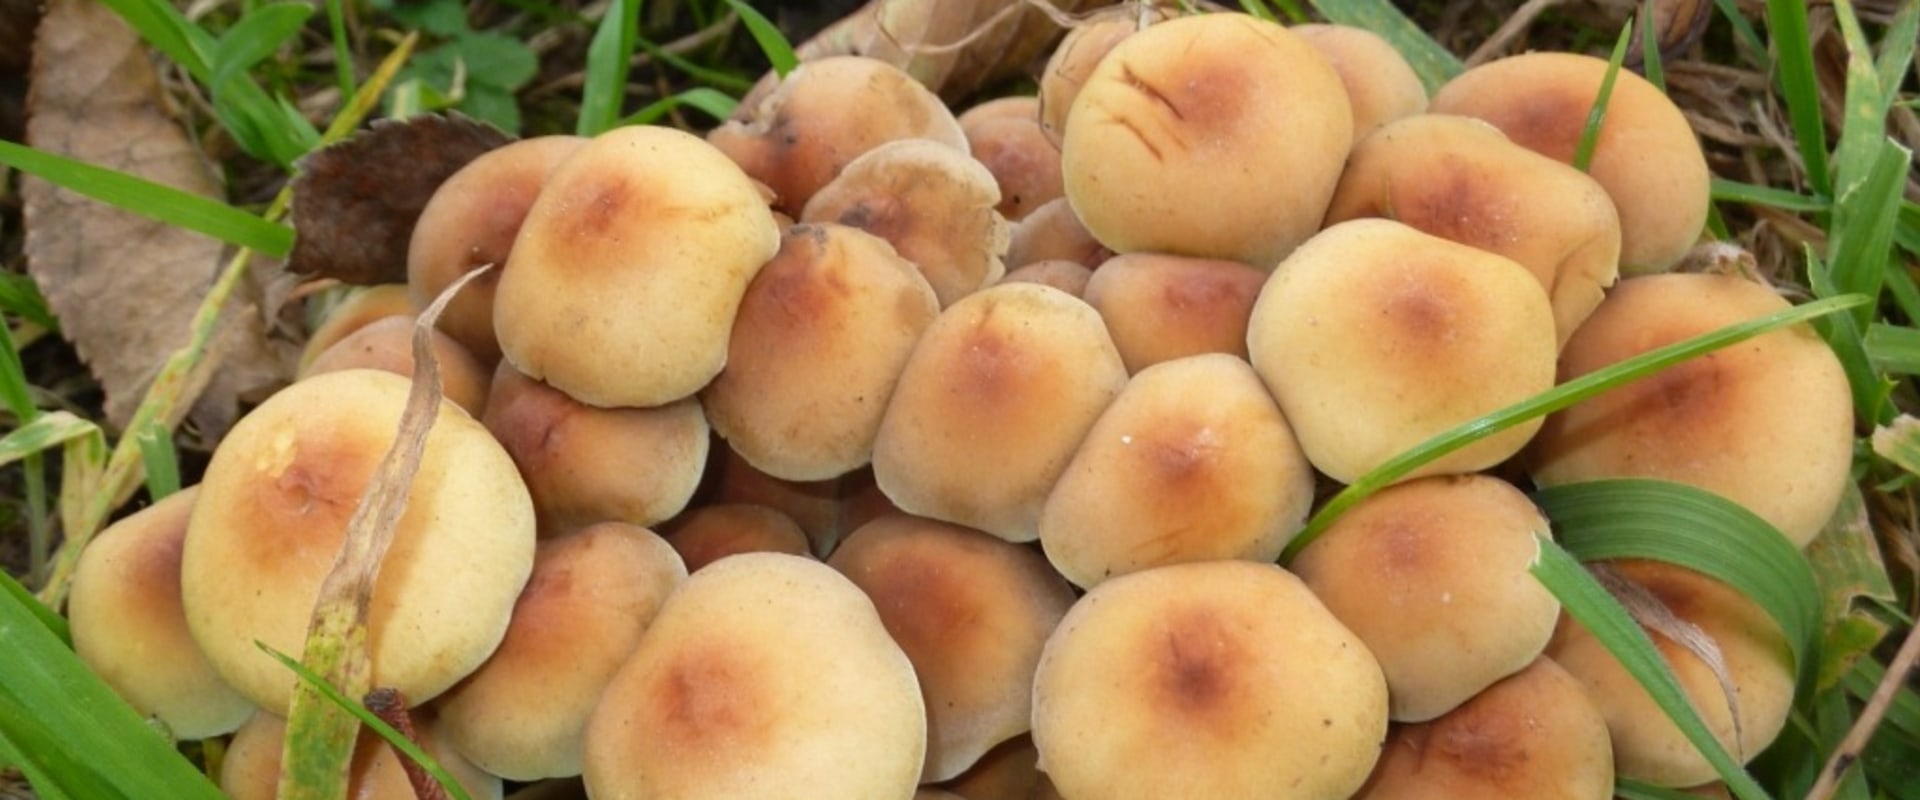 Zijn paddenstoelen in de achtertuin eetbaar?